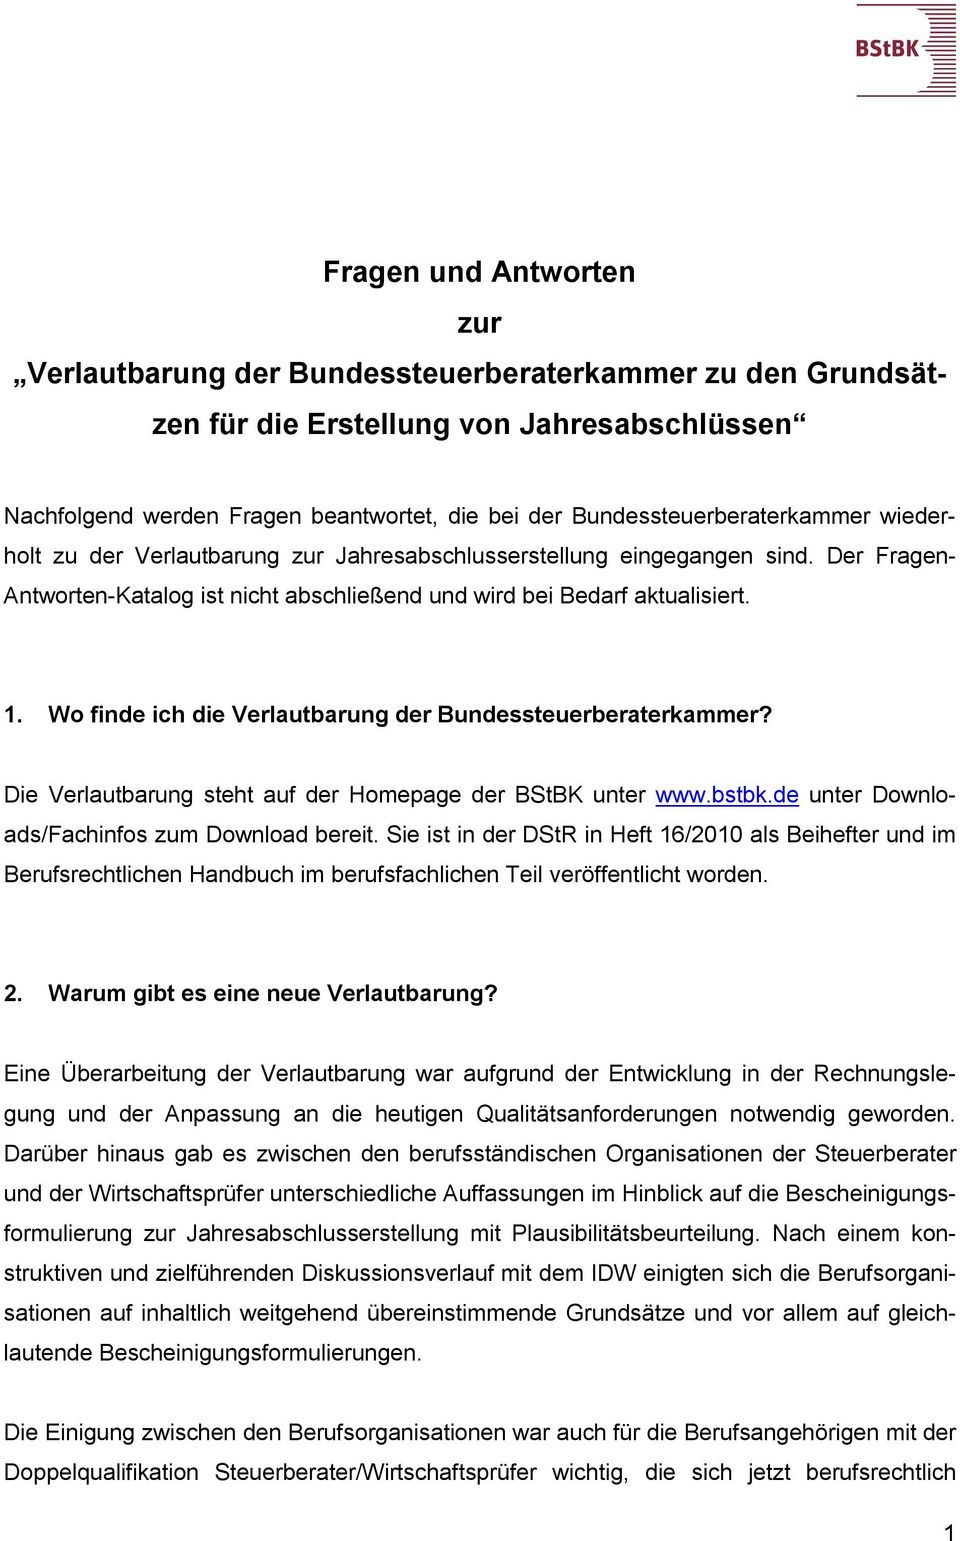 Wo finde ich die Verlautbarung der Bundessteuerberaterkammer? Die Verlautbarung steht auf der Homepage der BStBK unter www.bstbk.de unter Downloads/Fachinfos zum Download bereit.